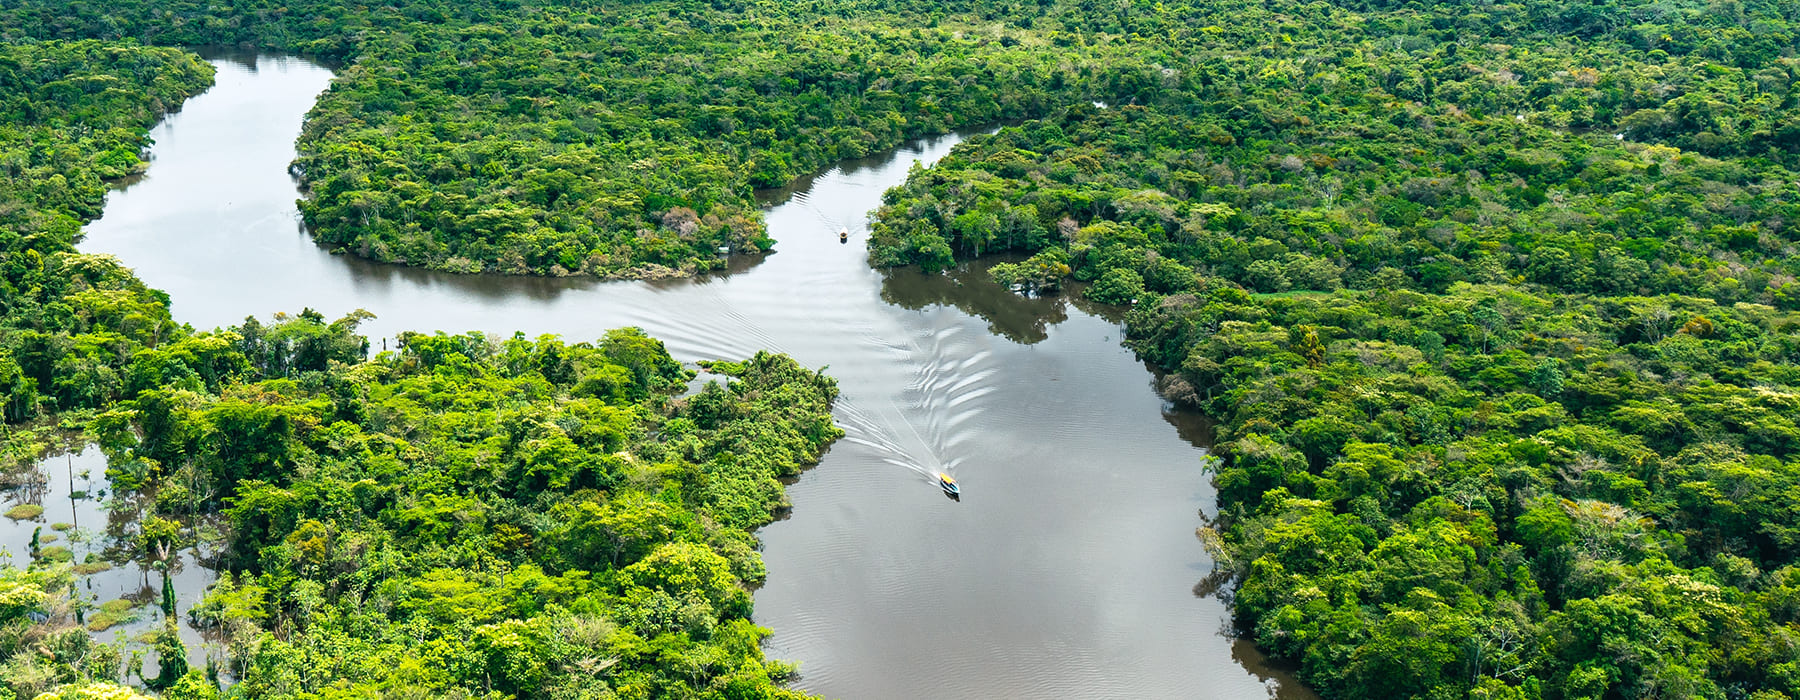 IST DER MANU NATIONALPARK TEIL DES AMAZONAS REGENWALD?